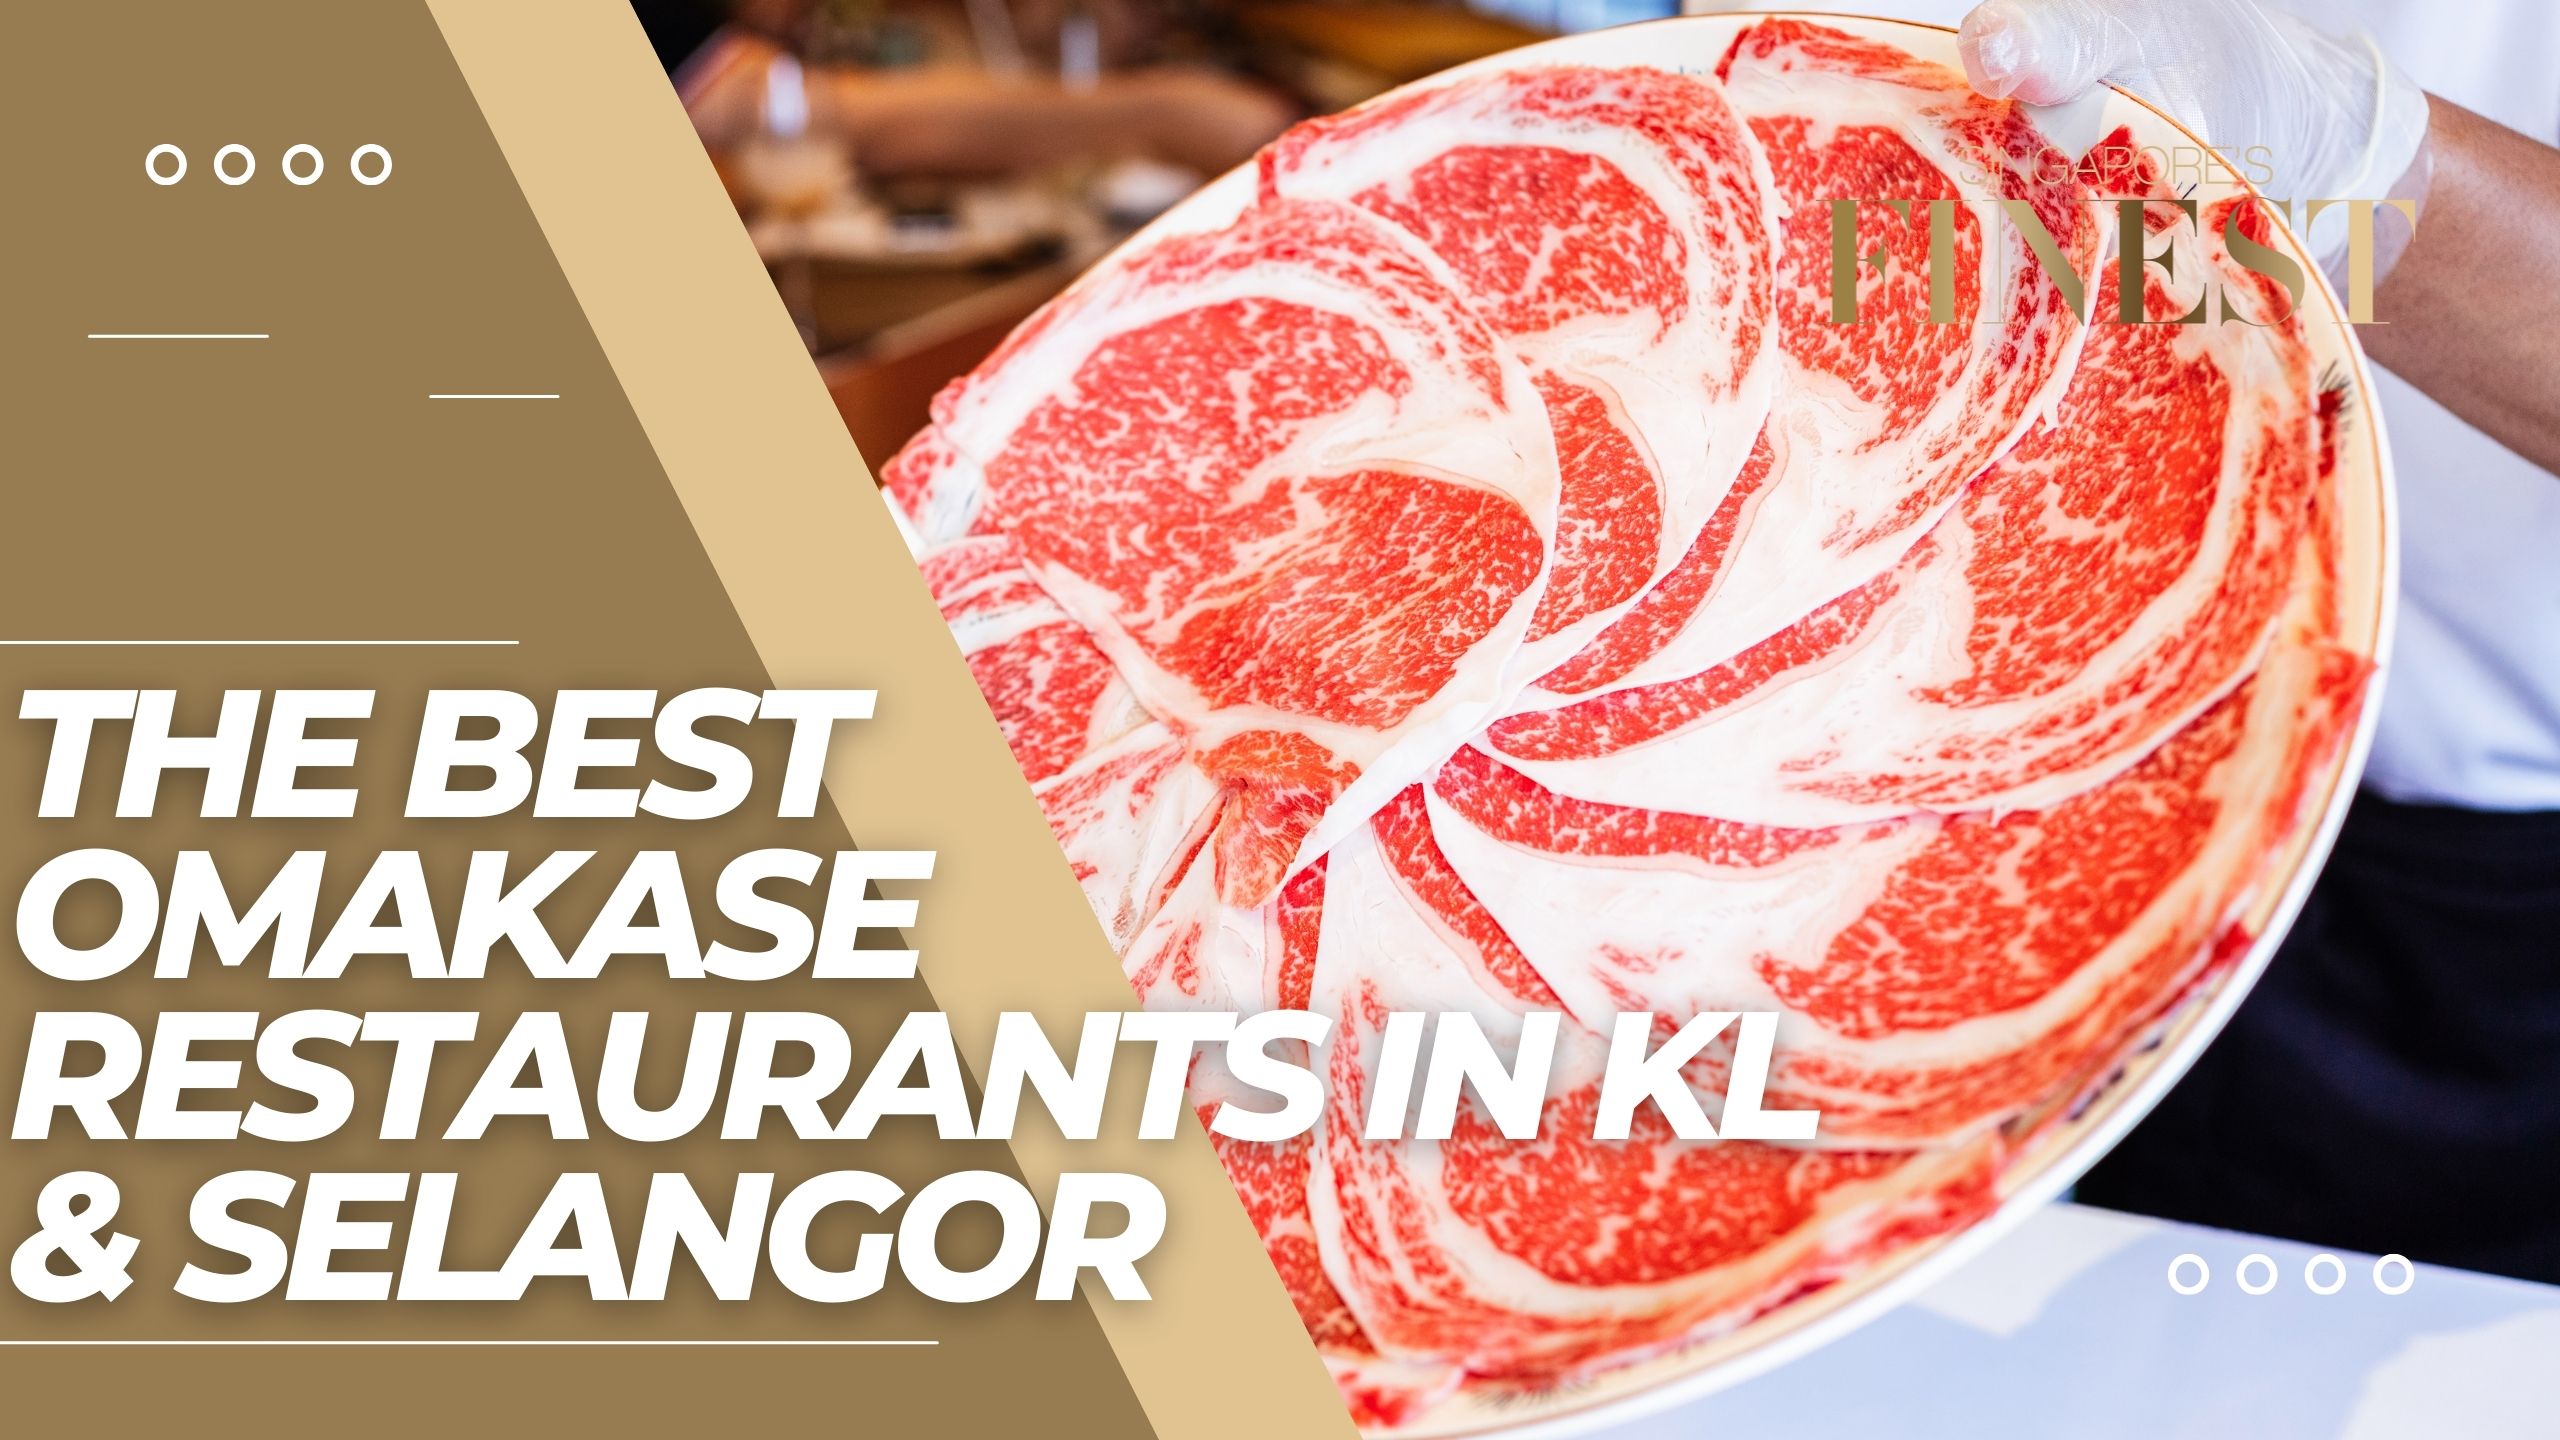 The Finest Omakase Restaurants in KL & Selangor